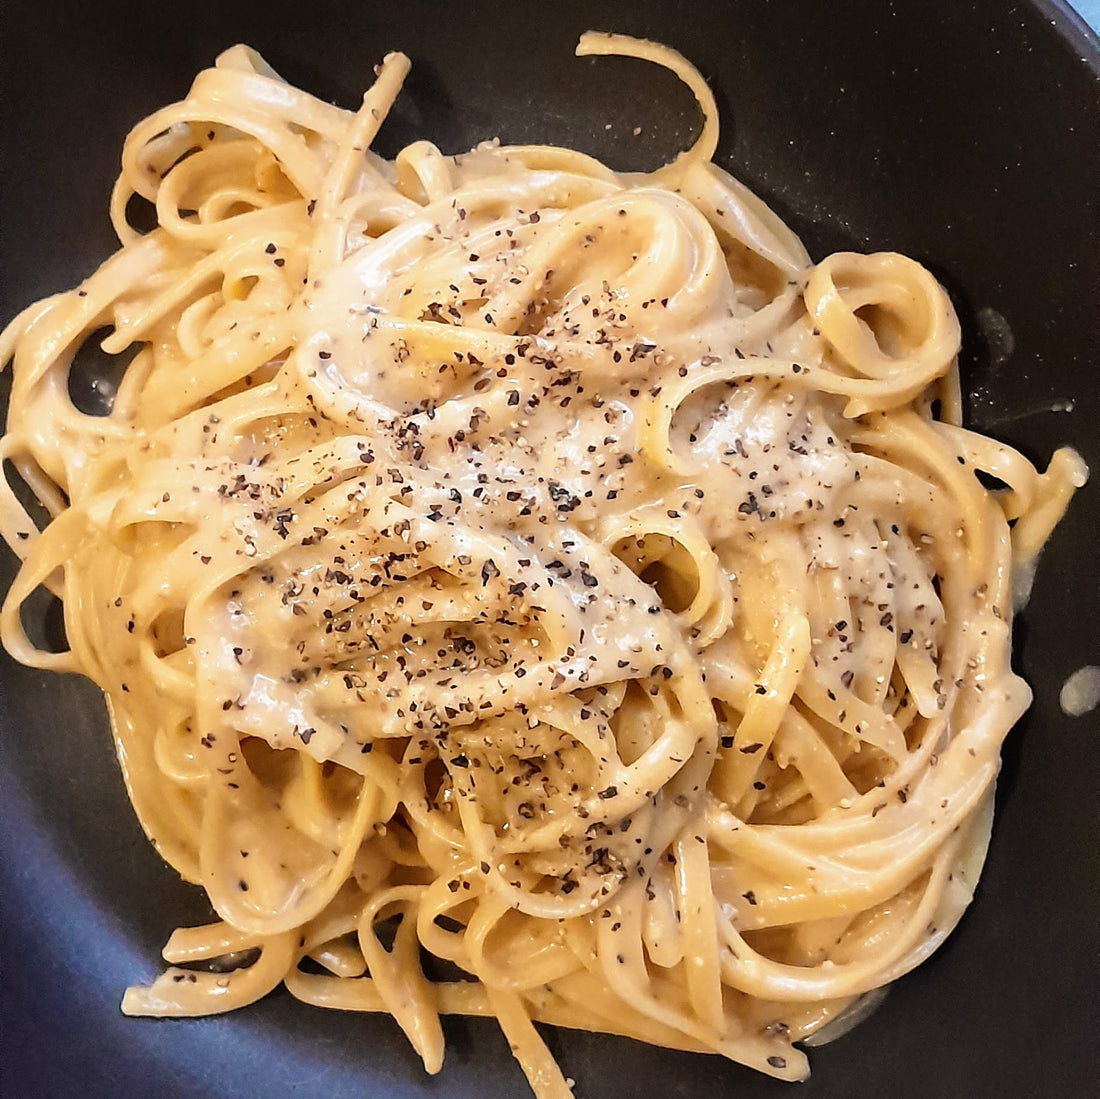 [RECIPE] "cacio e pepe" inspired pasta